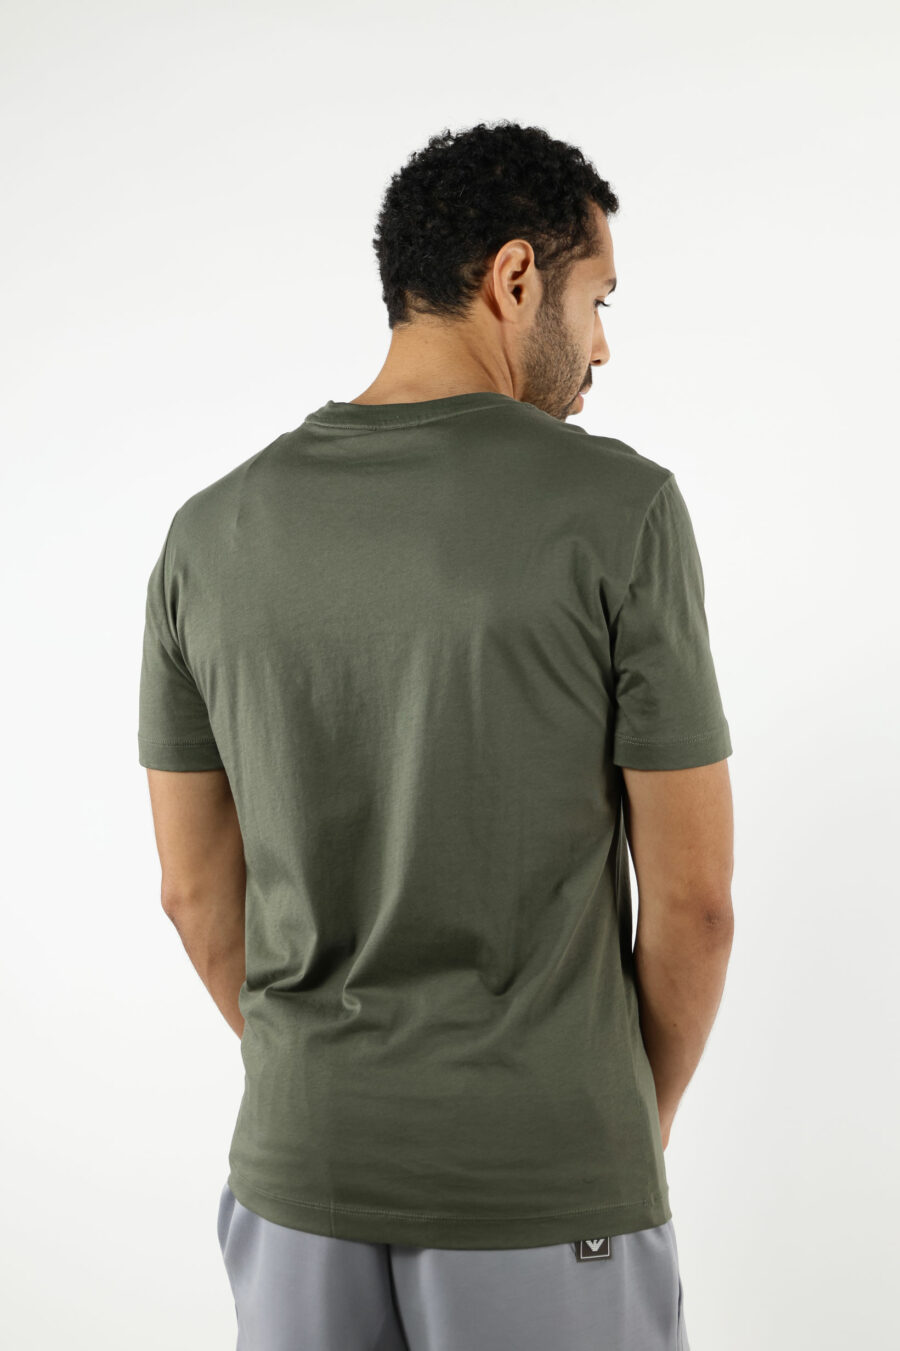 T-shirt verde com maxilogo "lux identity" em degradé - 110935